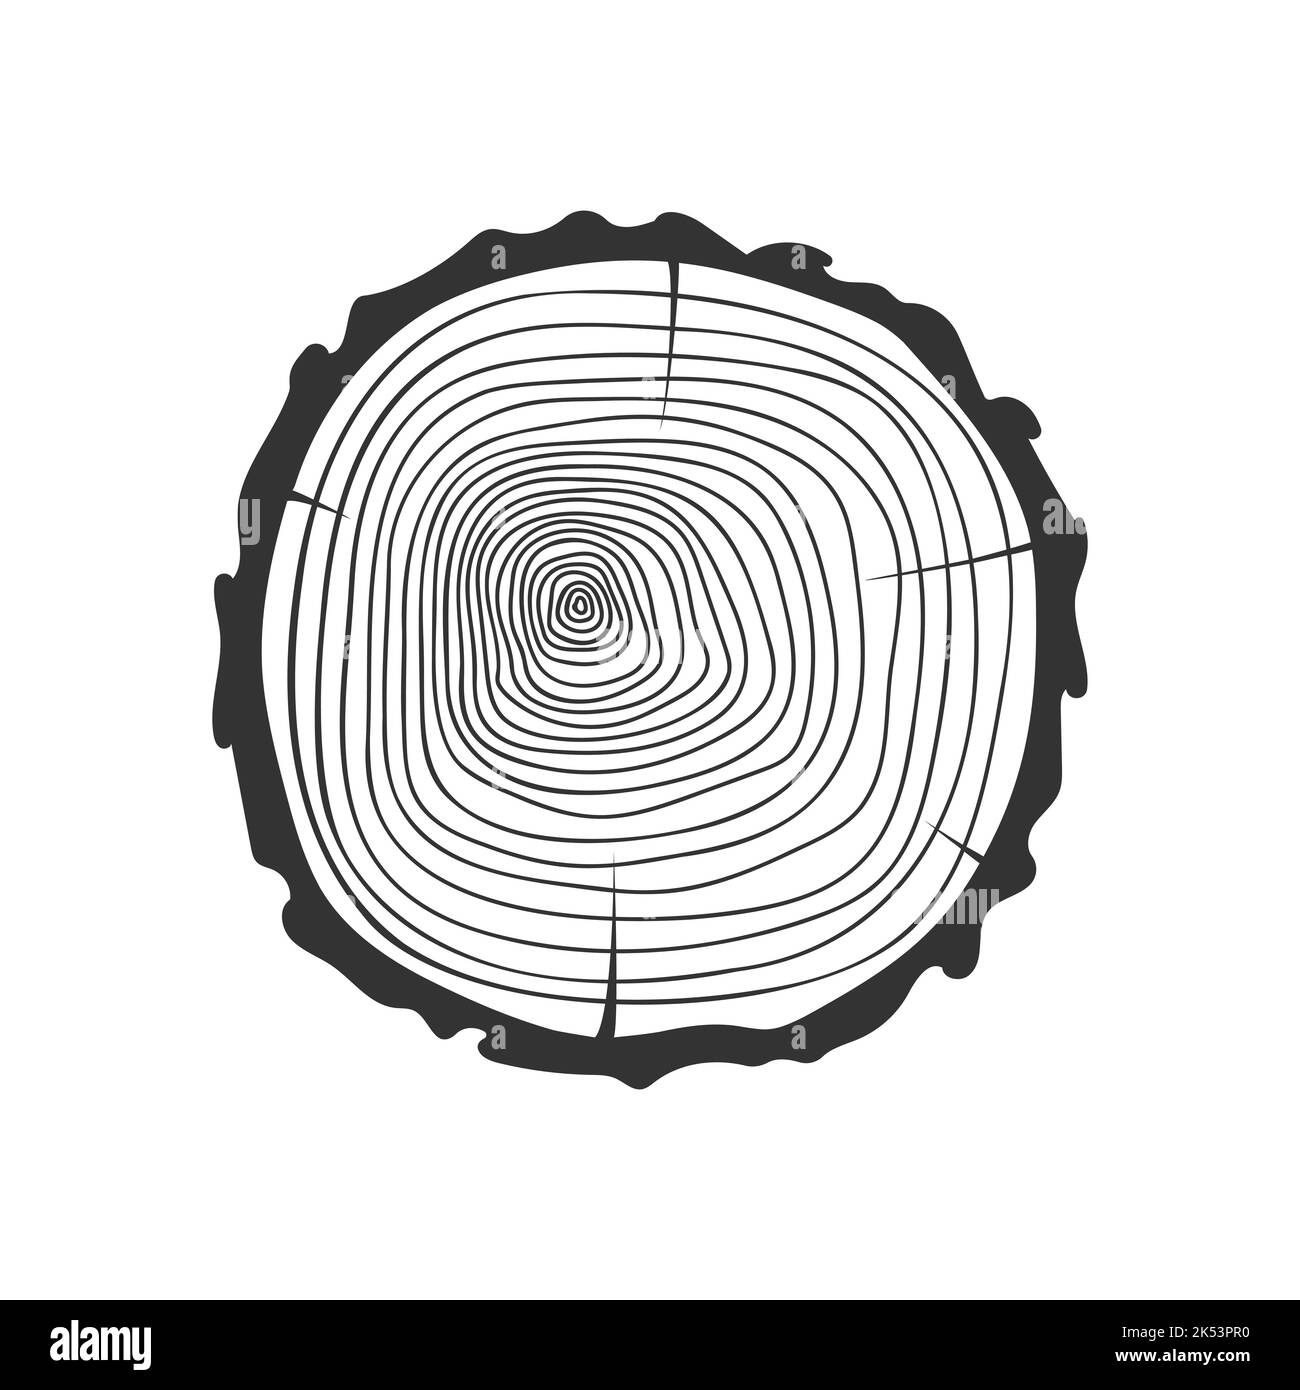 Anelli di crescita annuale in sezione trasversale del tronco dell'albero. Timbro di legno tessuto disegnato a mano isolato su sfondo bianco. Dendrocronologia datazione metodo per determinare l'età dell'albero. Illustrazione del doodle vettoriale Illustrazione Vettoriale